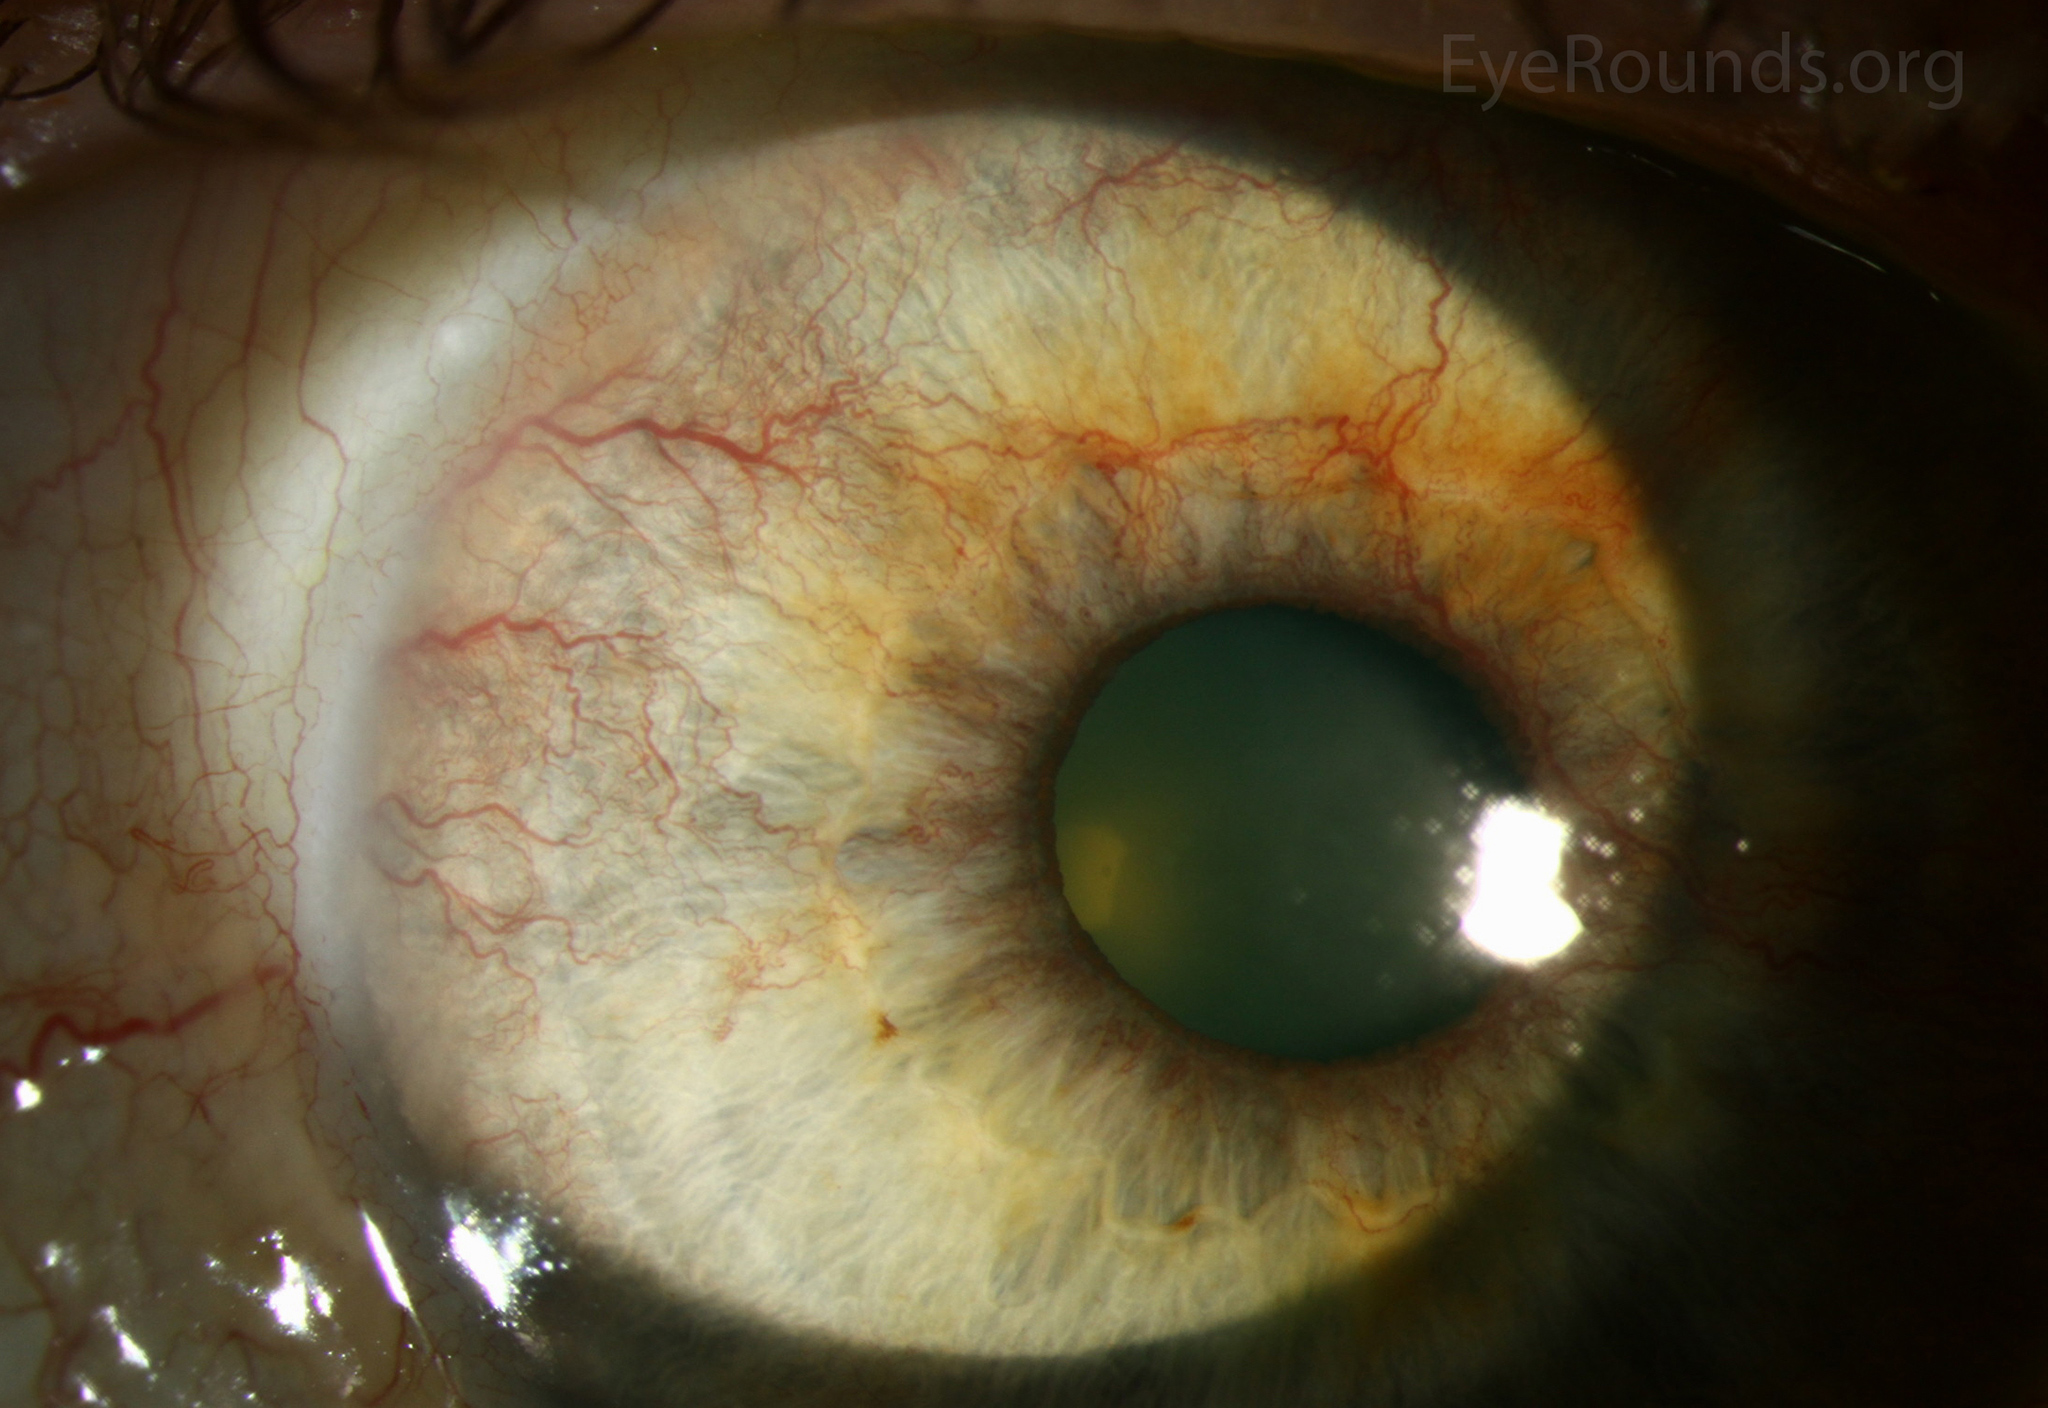 rubeosis iridis diabetic eye